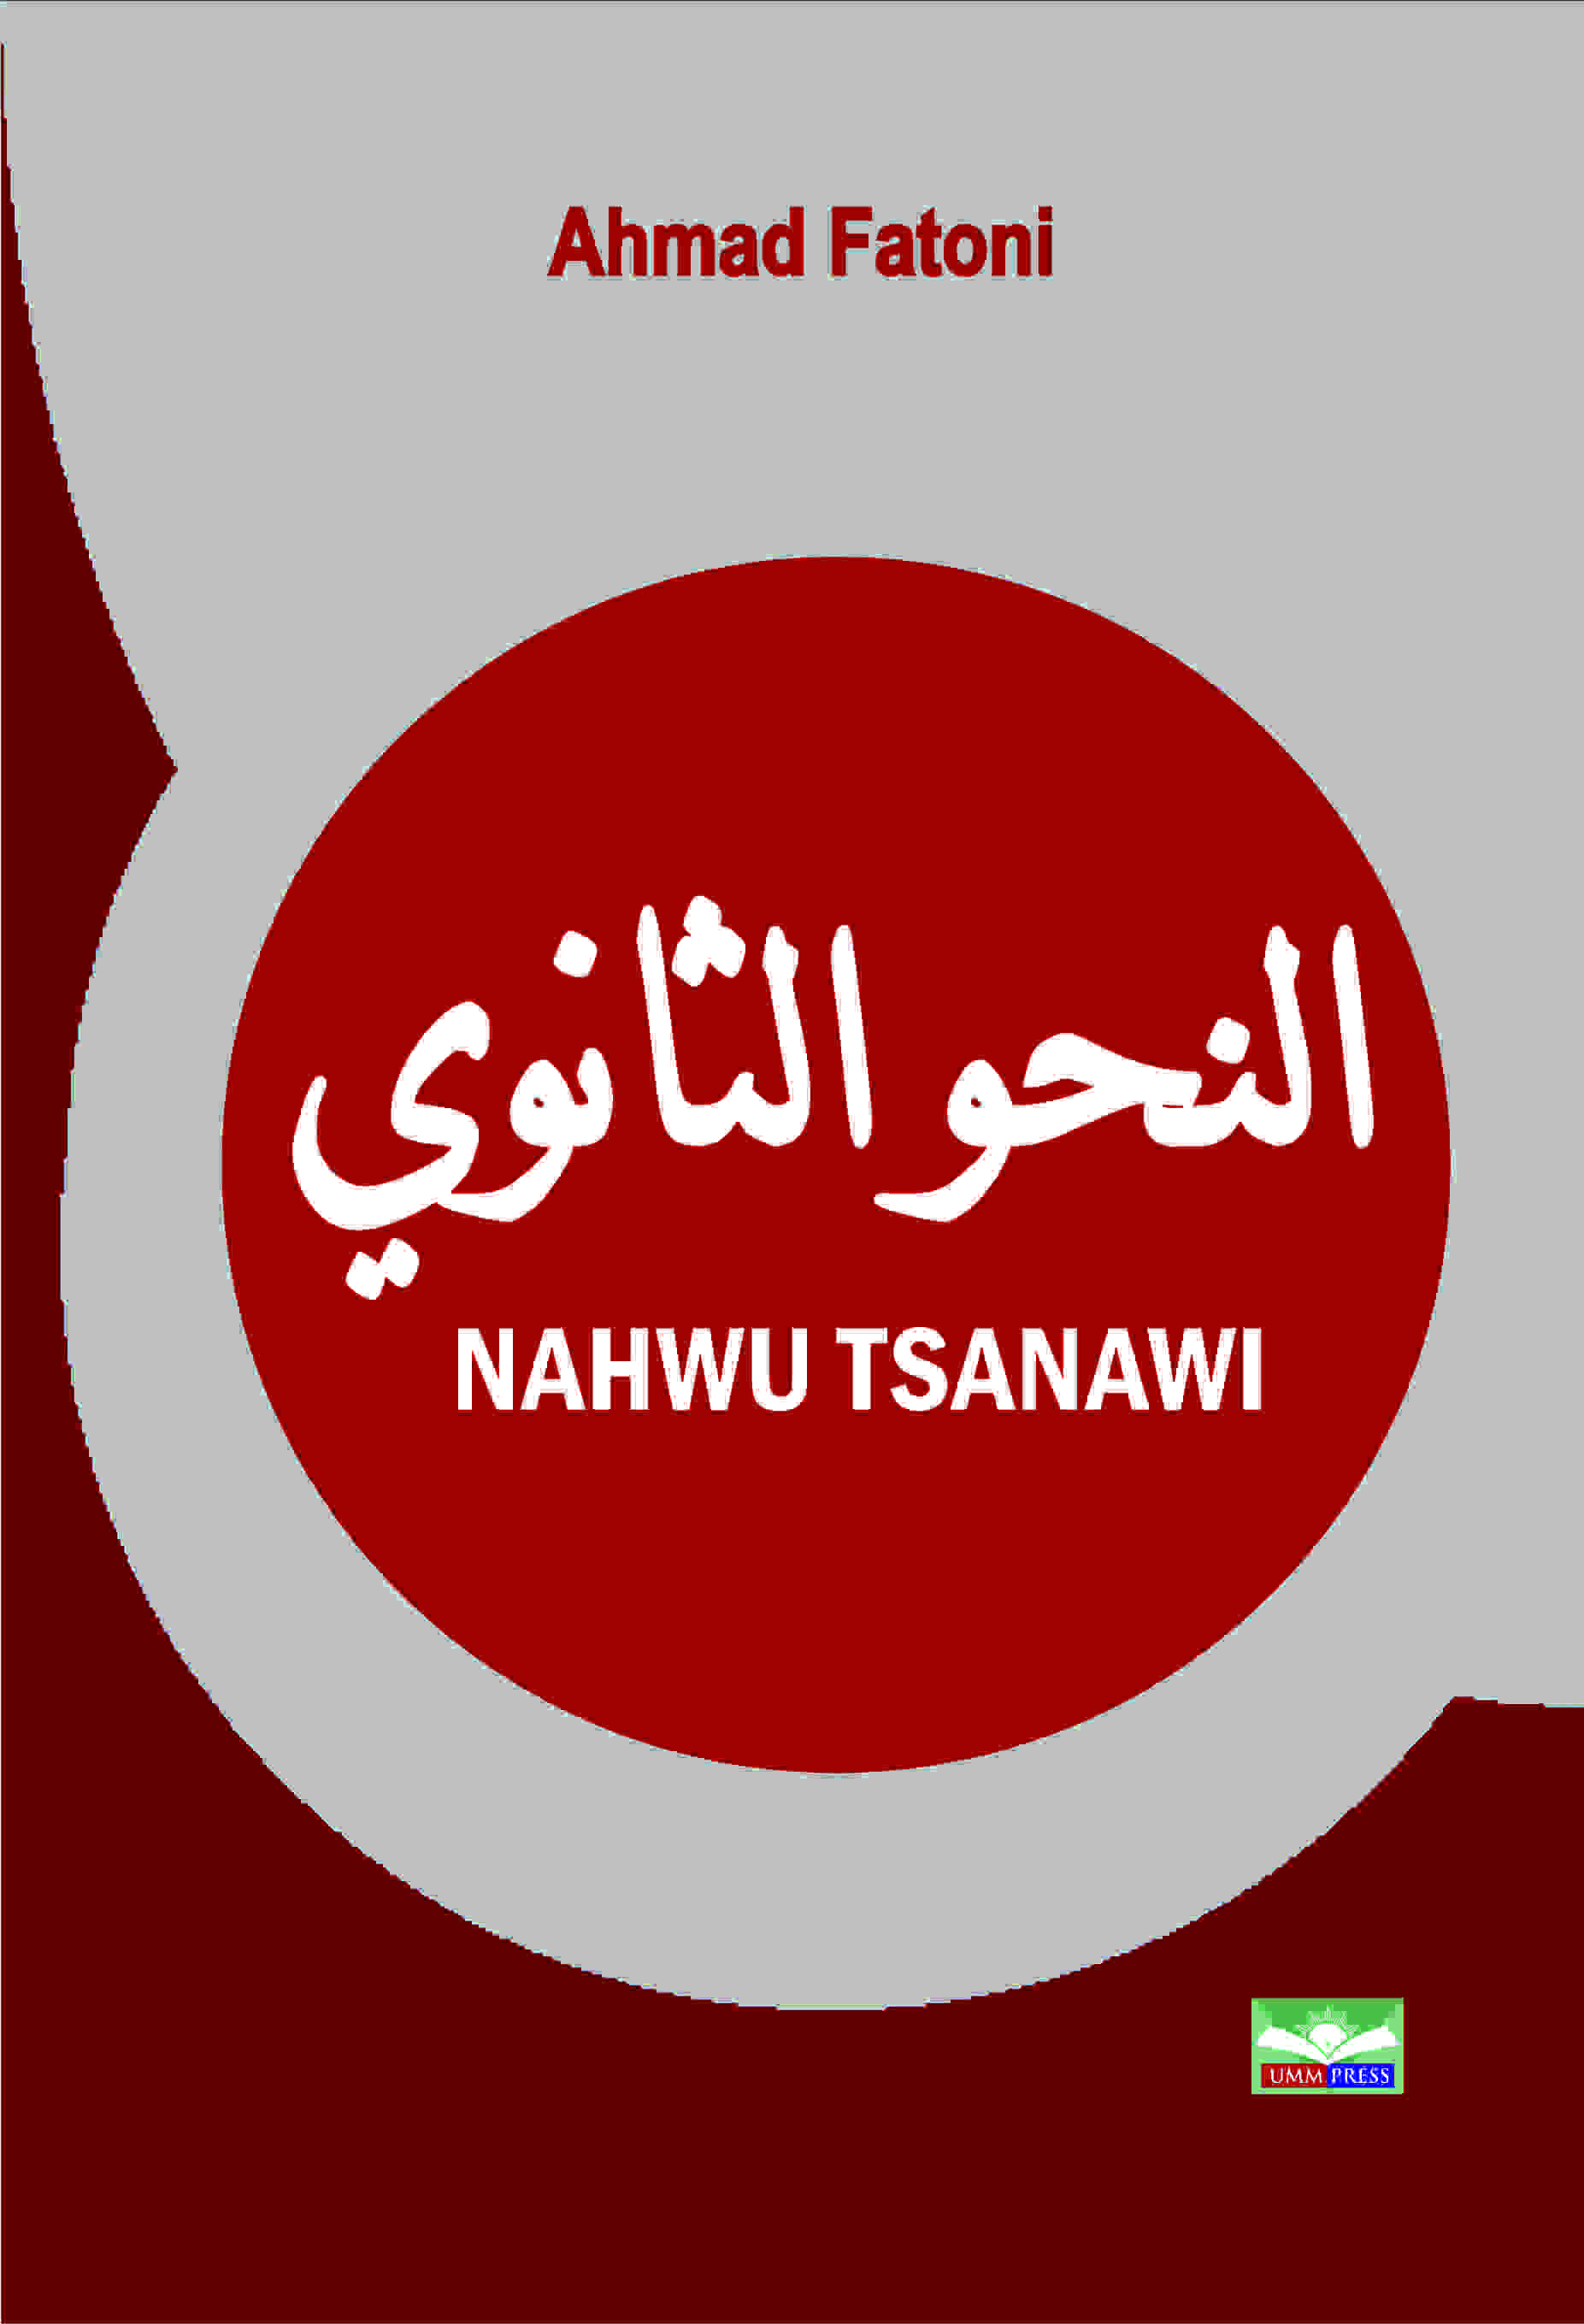 NAHWU TSANAWI